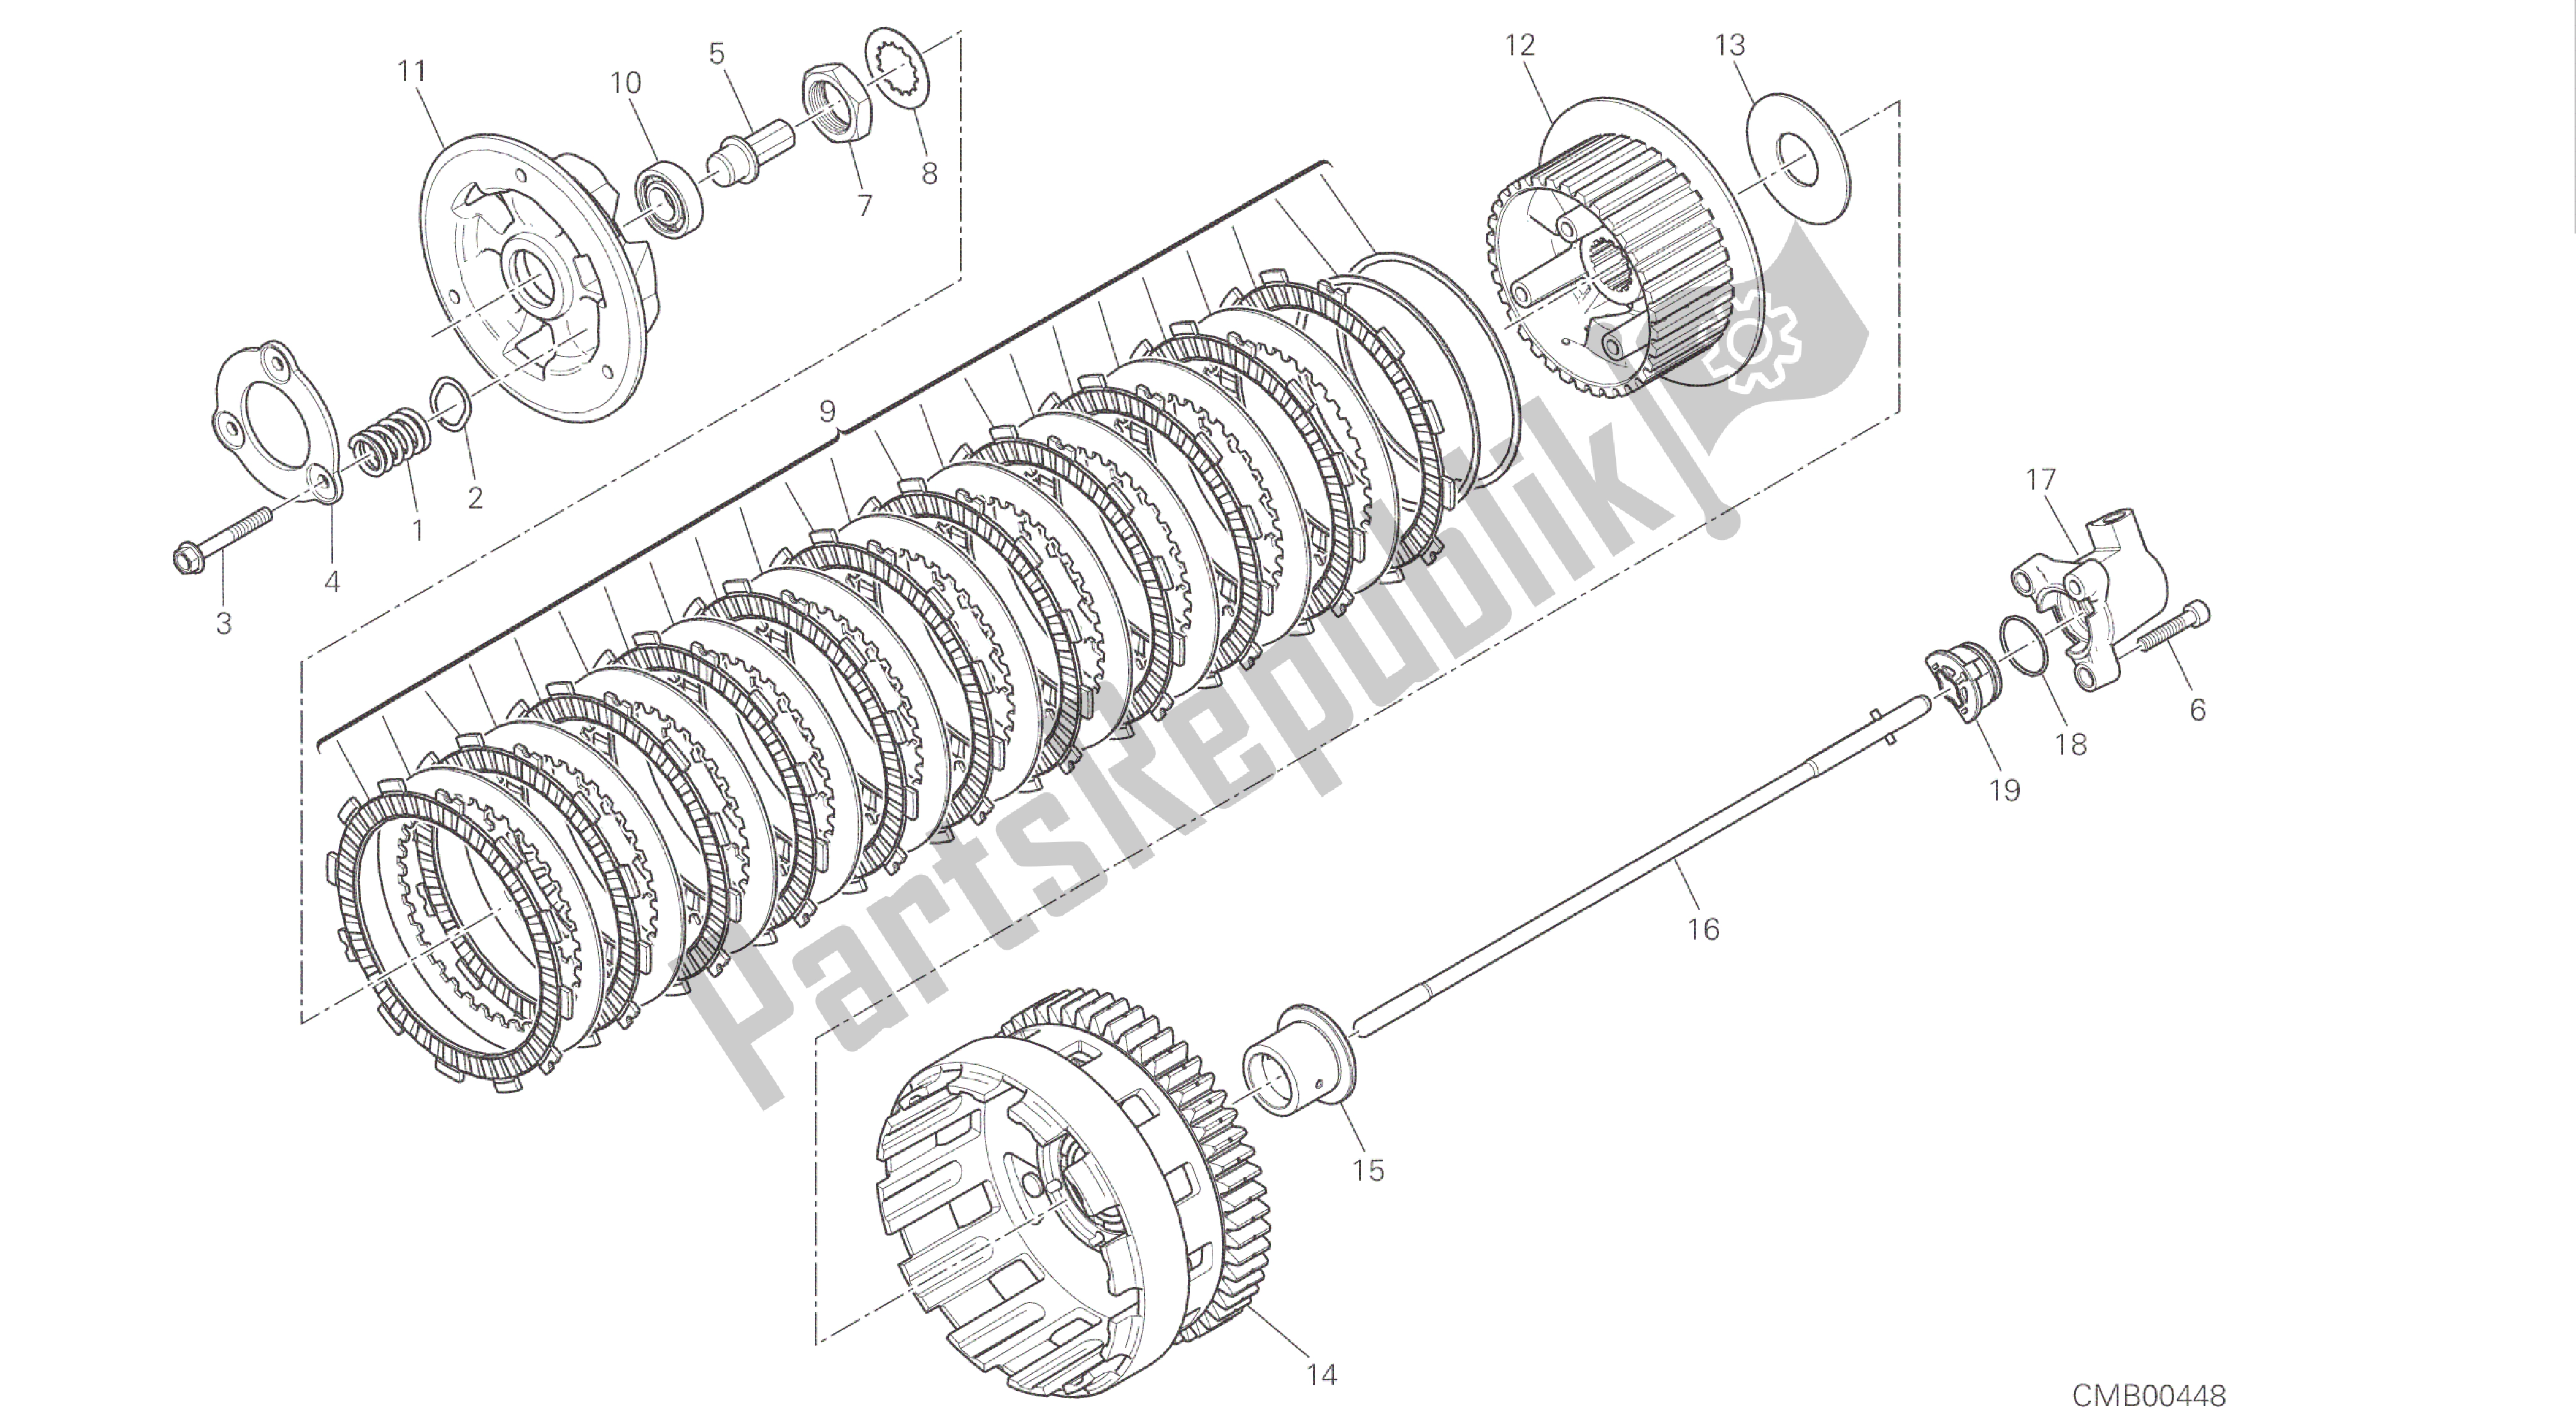 Todas las partes para Dibujo 004 - Motor Del Grupo Embrague [mod: 1299s; Xst: Aus, Eur, Fra, Jap, Twn] de Ducati Panigale S ABS 1299 2016